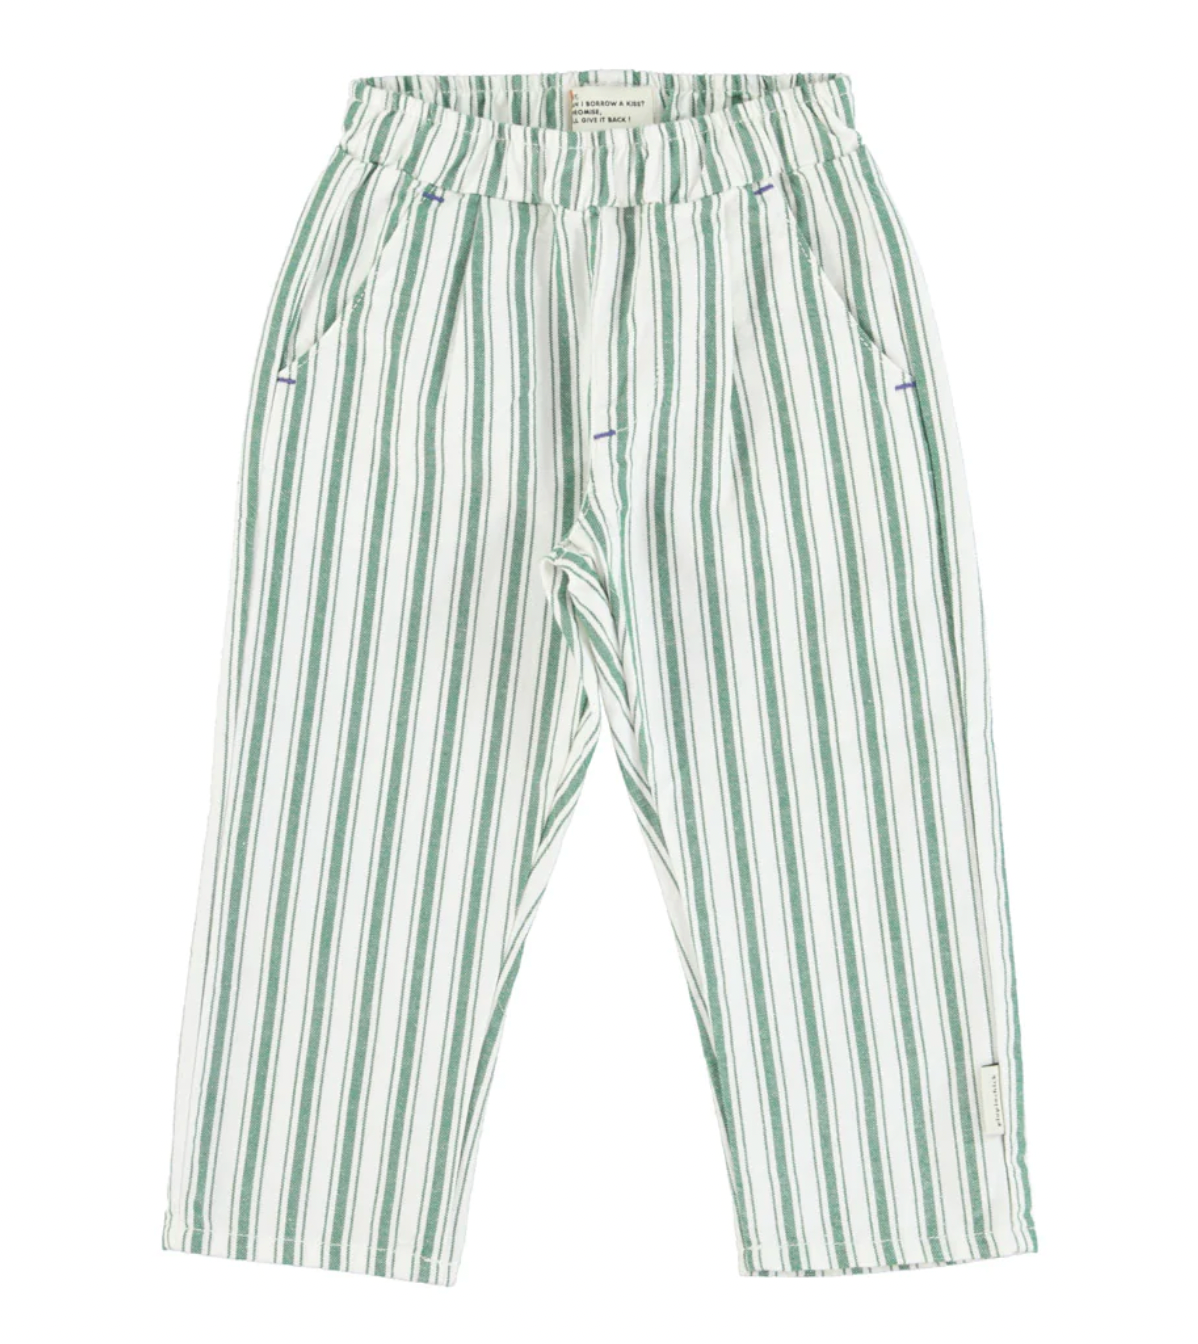 Pantalon unisexe rayé - vert/blanc